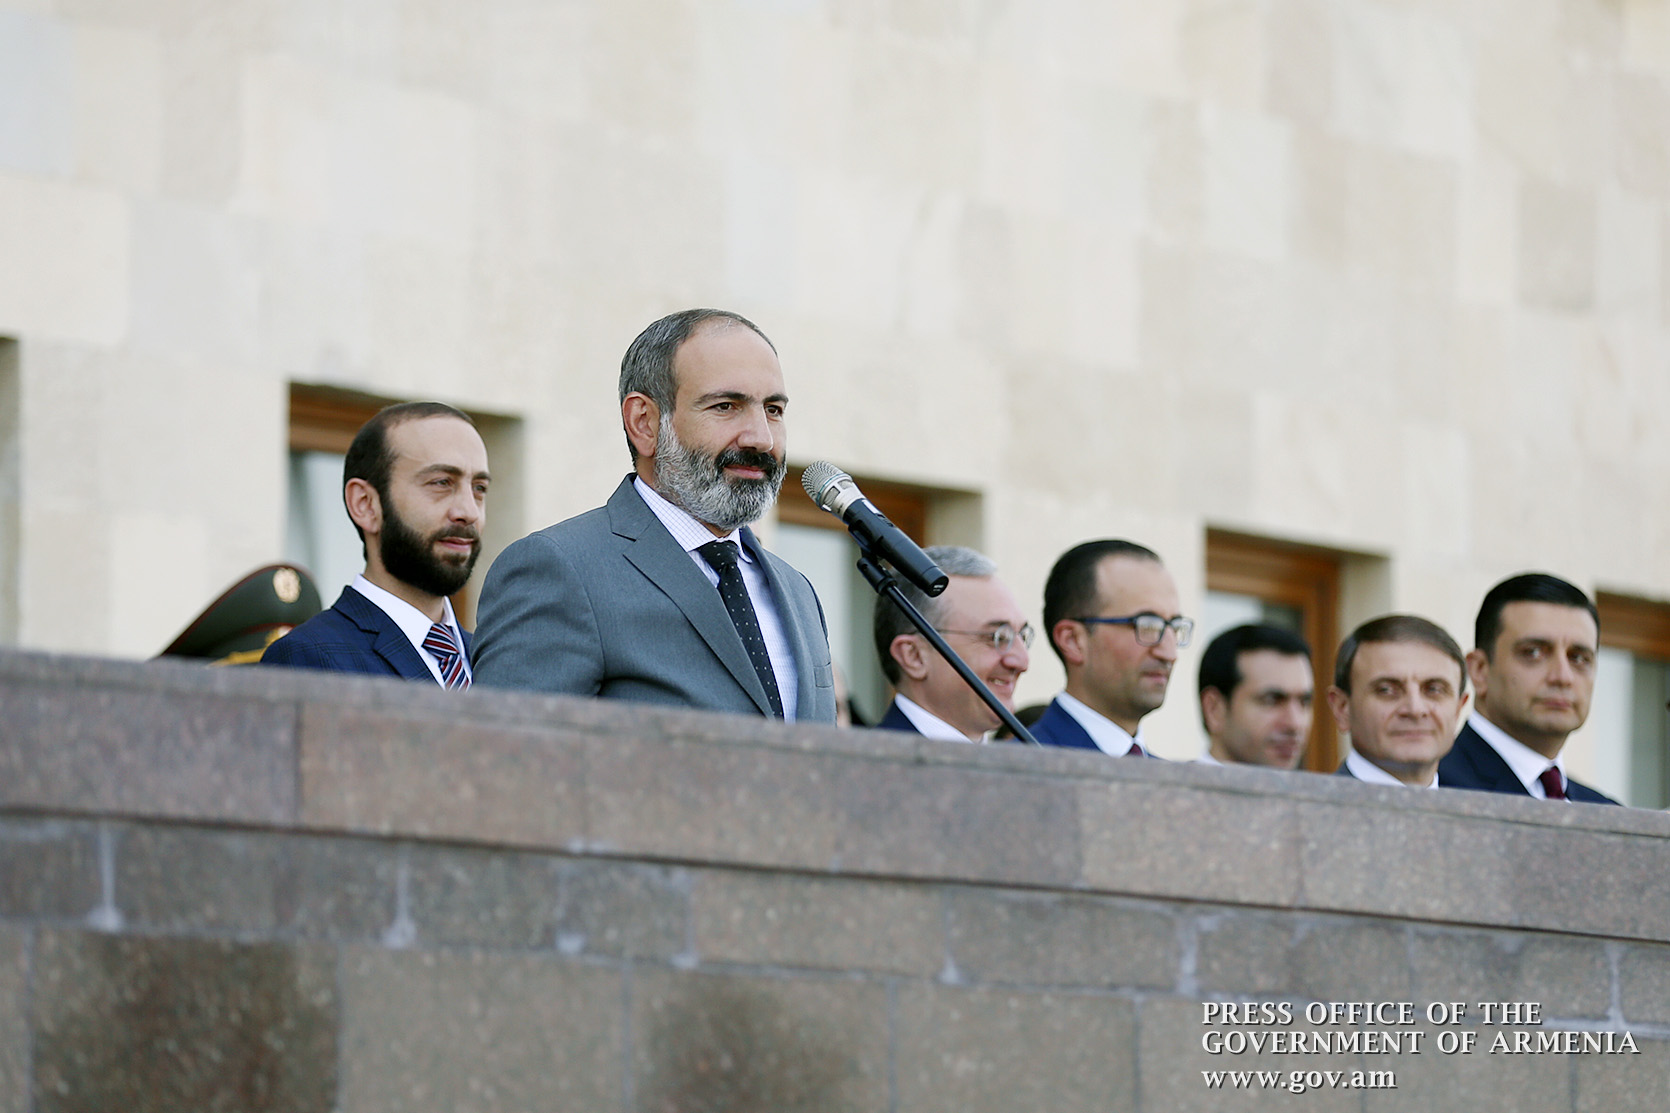 Пашинян: Никто, ни изнутри, ни снаружи, не может отнять победу из рук армянского народа